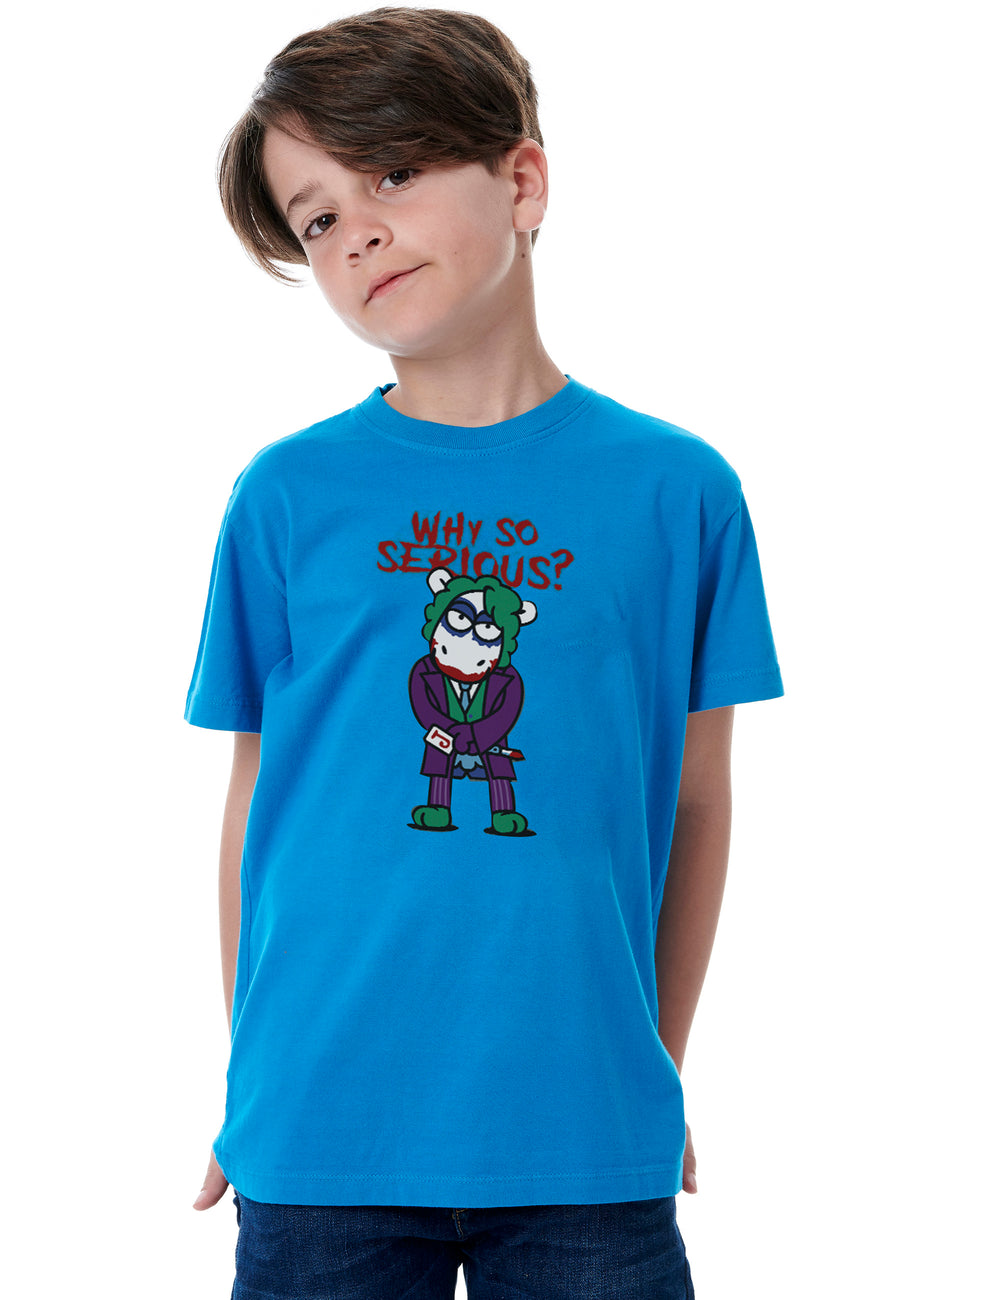 Joker Bee Kids T-Shirt